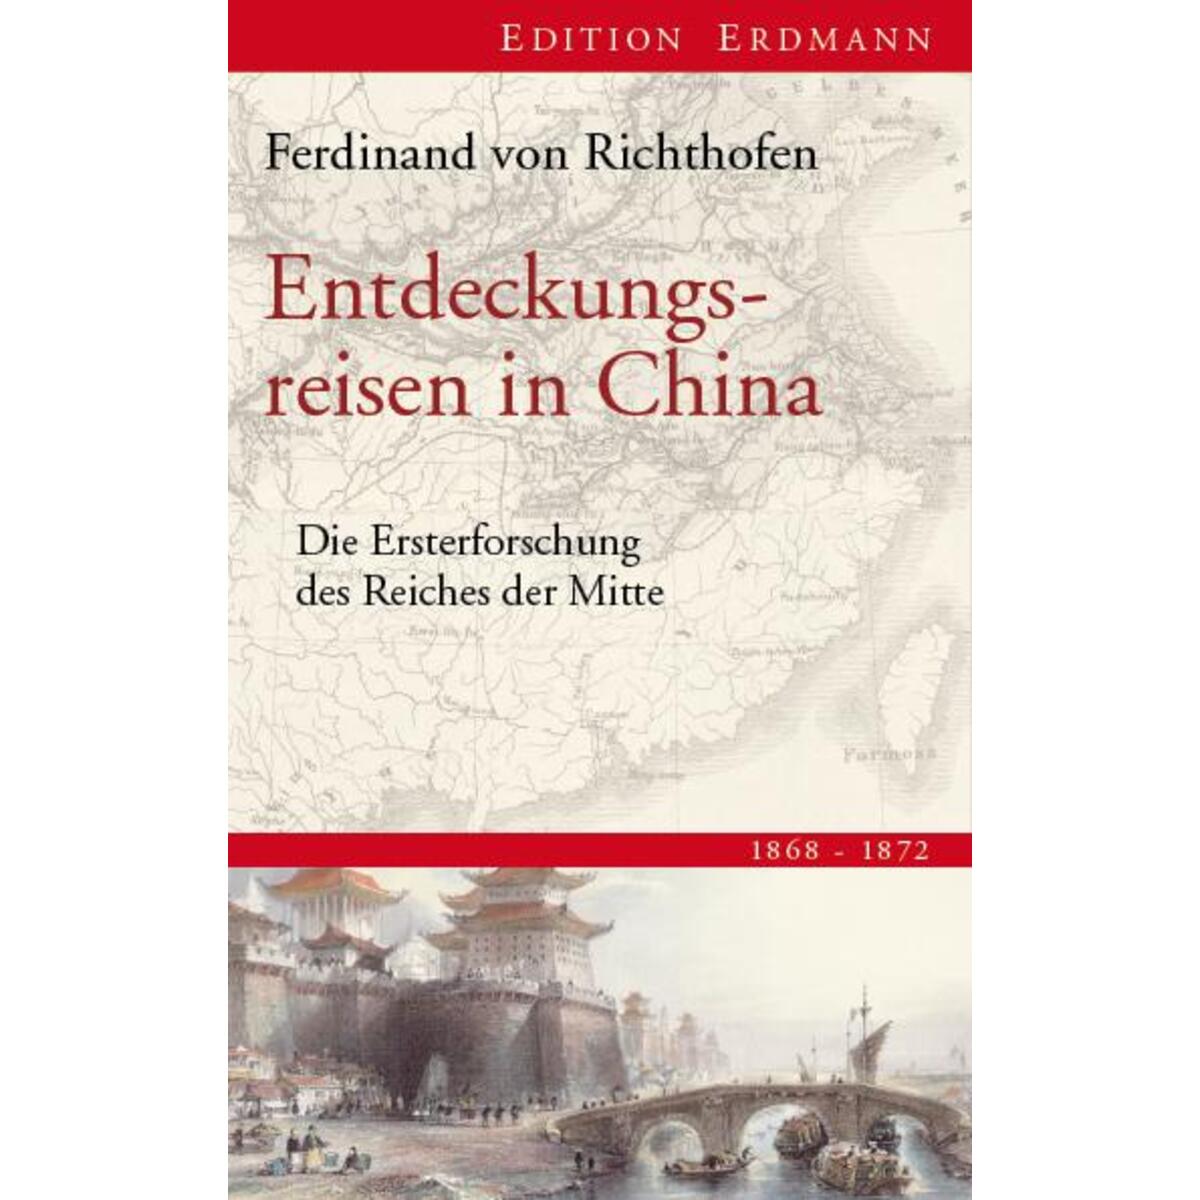 Entdeckungsreisen in China von Edition Erdmann